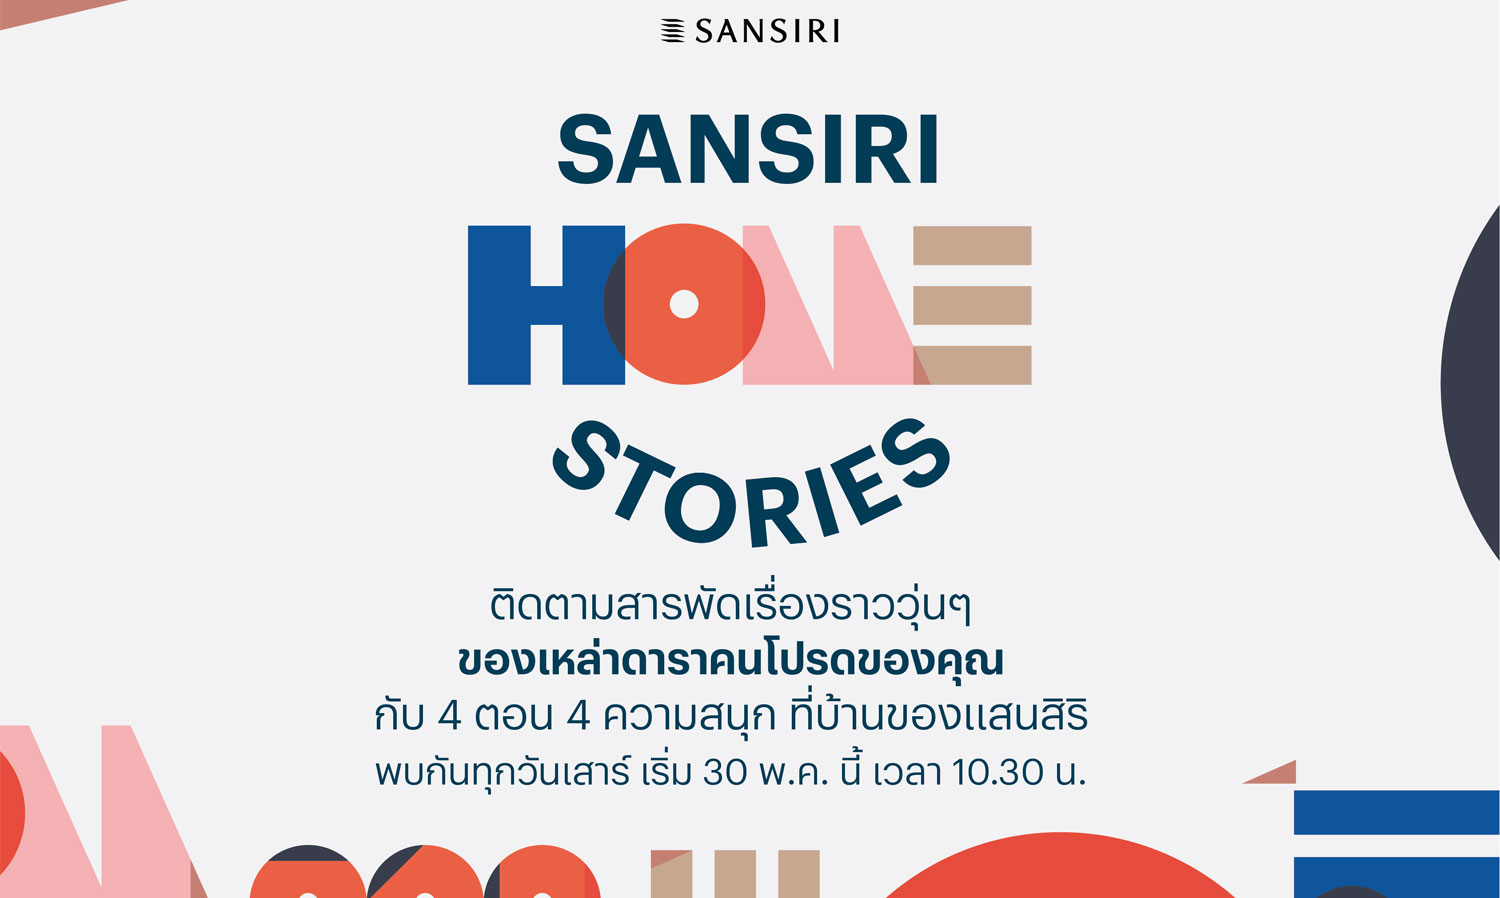 รายการใหม่ล่าสุดจากแสนสิริ Sansiri Home Stories